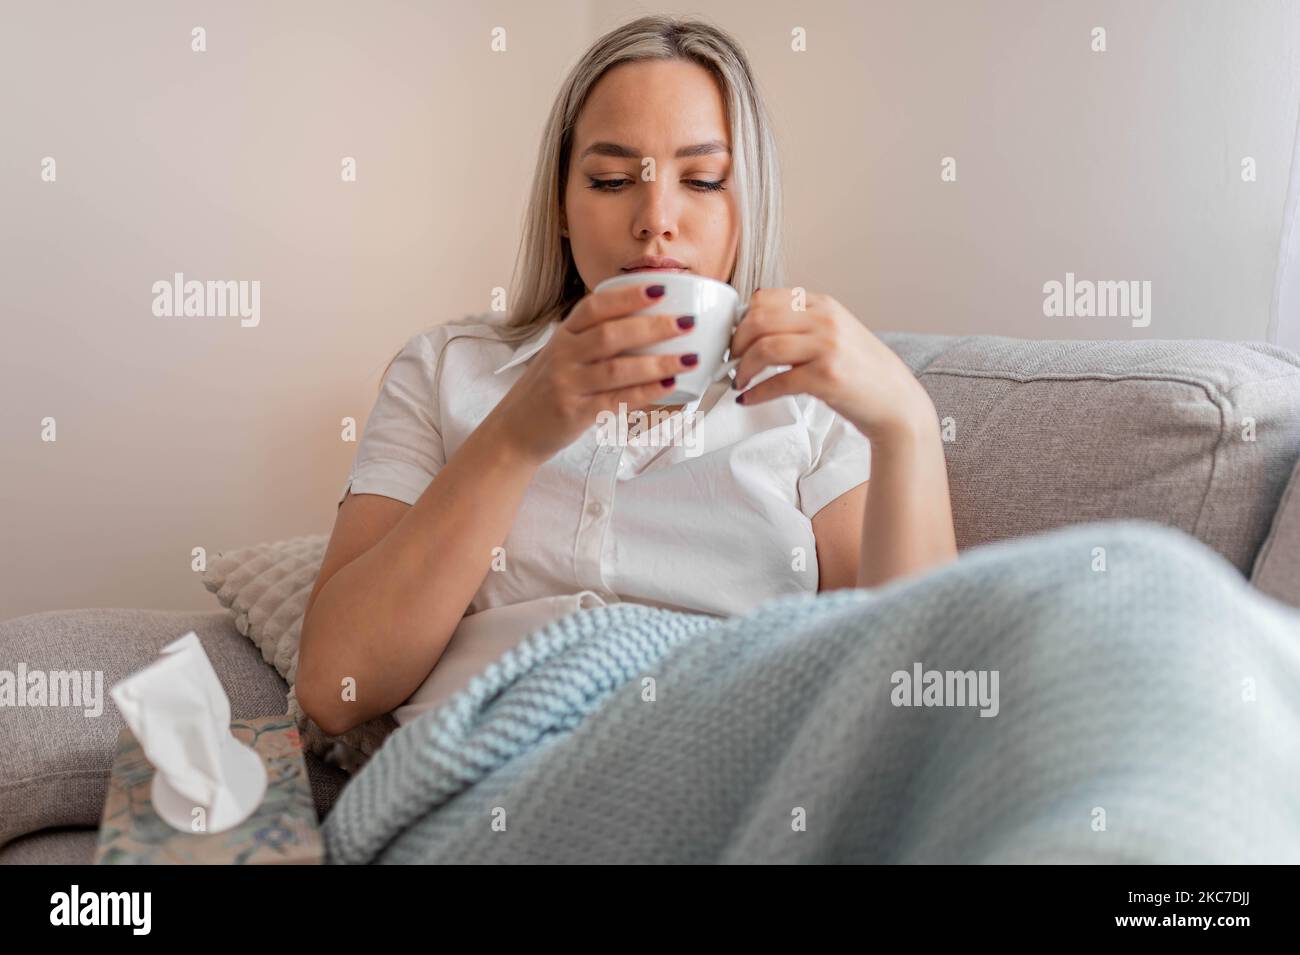 Kranke Frau, die unter der Decke sitzt. Kranke Frau mit saisonalen Infektionen, Grippe, Allergie im Bett liegend. Kranke Frau mit einer Decke bedeckt, die Tee trinkt Stockfoto